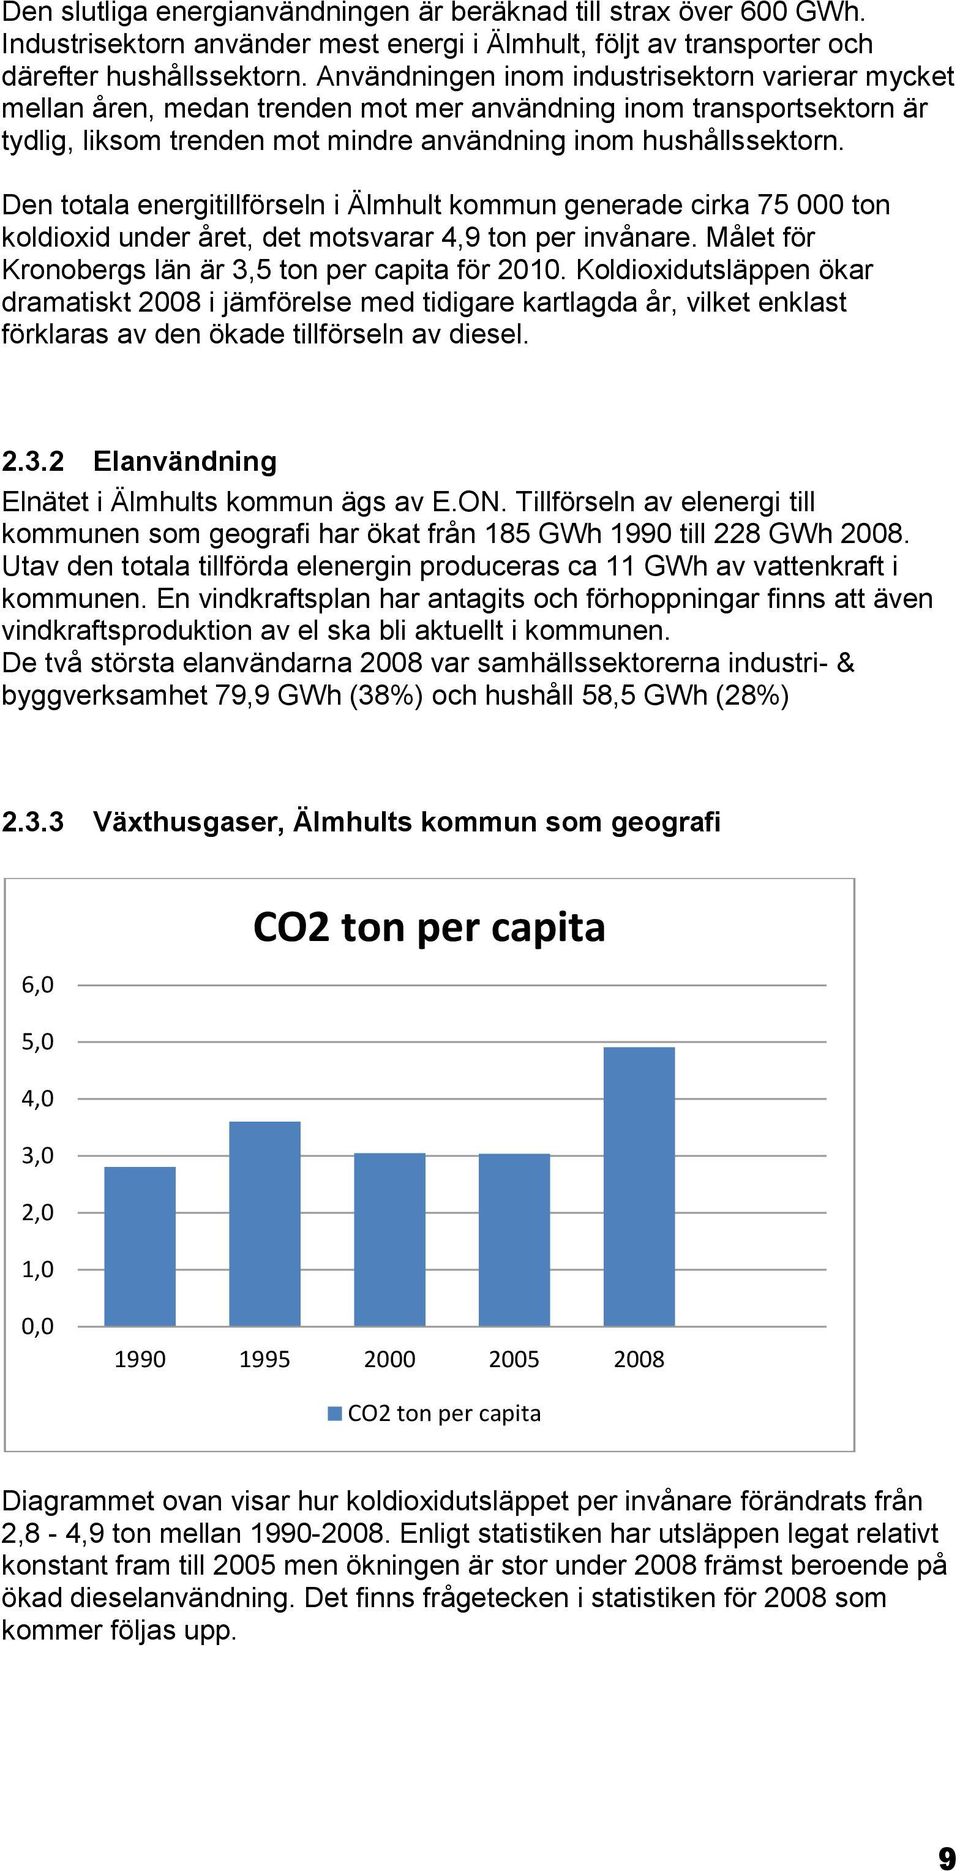 Den totala energitillförseln i Älmhult kommun generade cirka 75 000 ton koldioxid under året, det motsvarar 4,9 ton per invånare. Målet för Kronobergs län är 3,5 ton per capita för 2010.